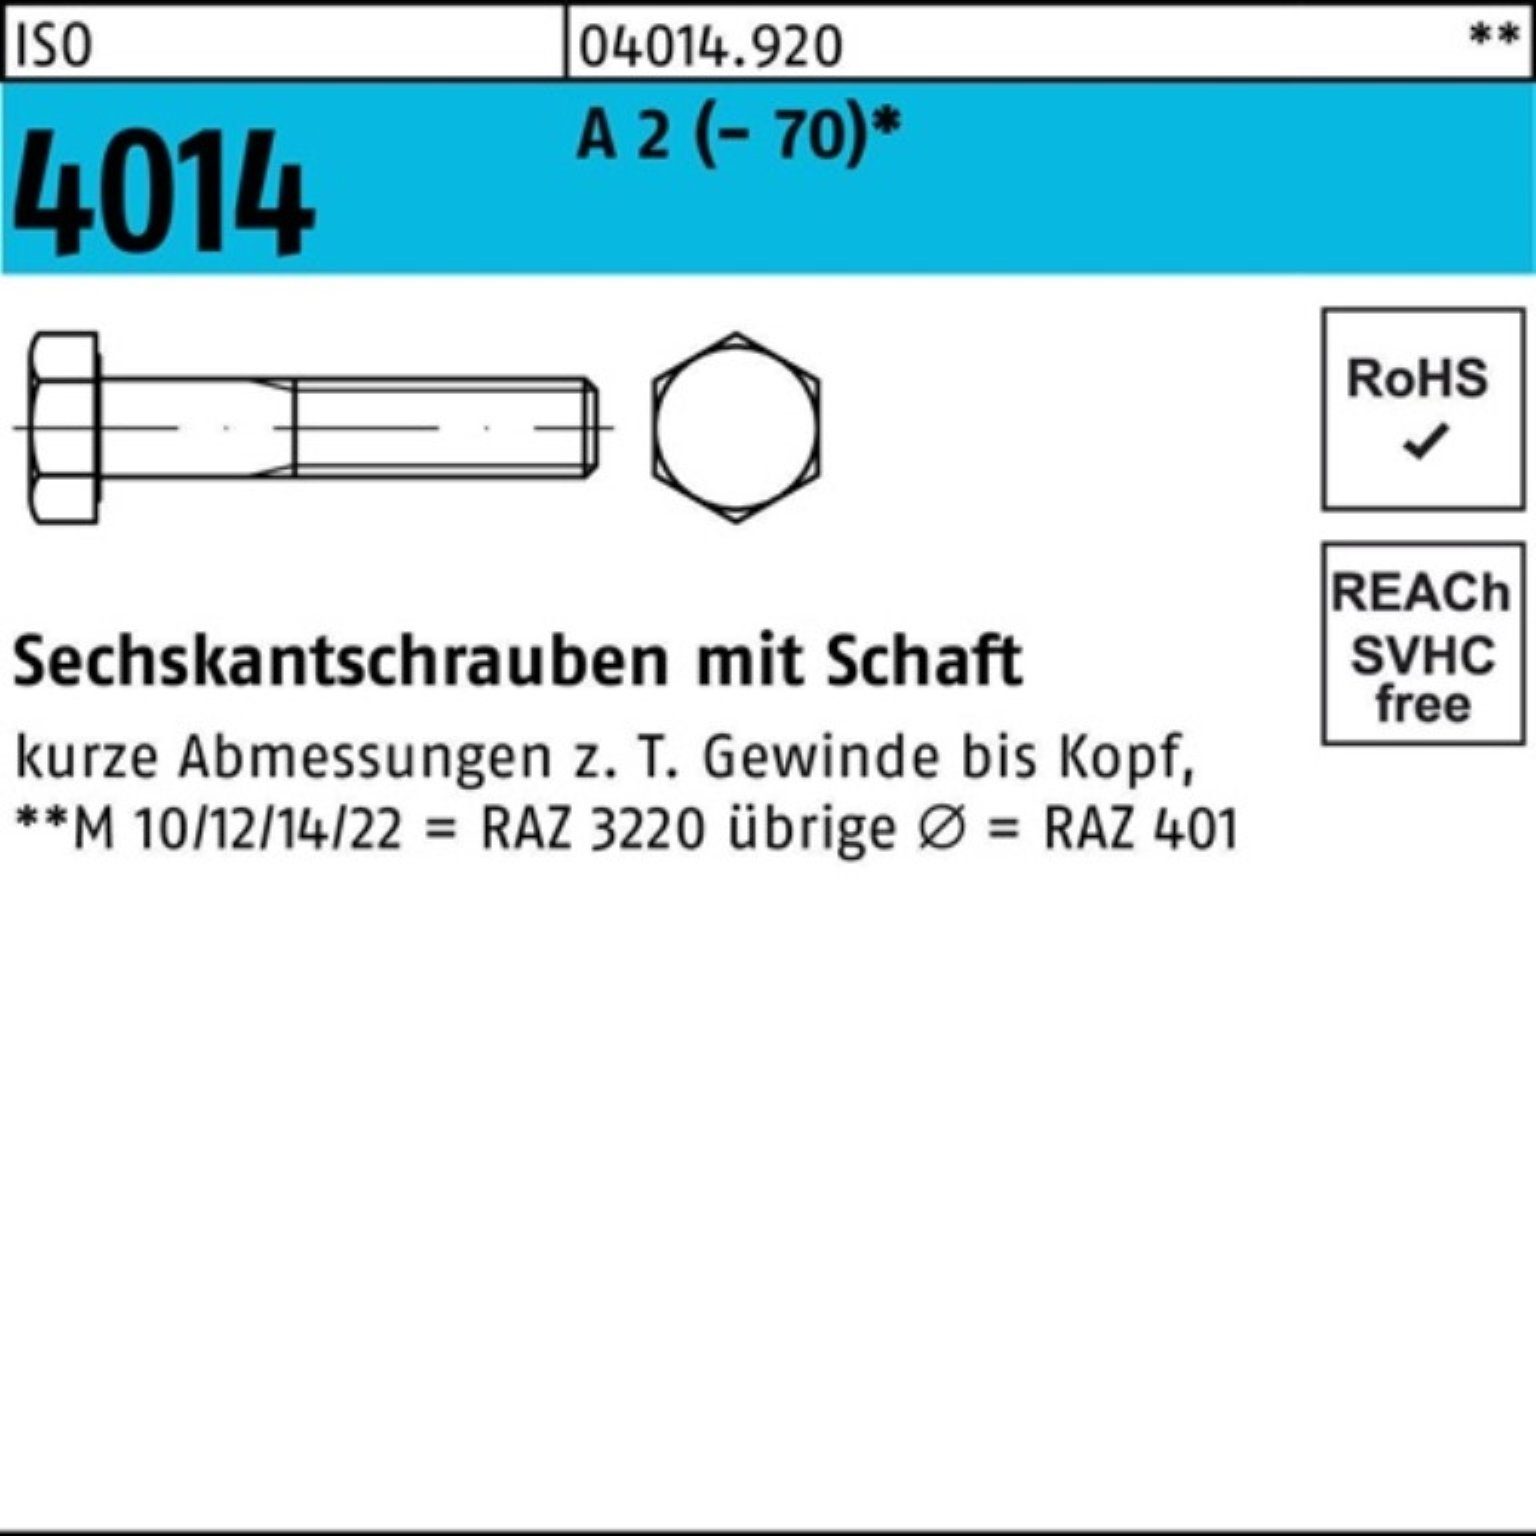 Pack 70 2 Sechskantschraube Sechskantschraube 100er Bufab Schaft A M20x Stü 1 (70) 4014 ISO